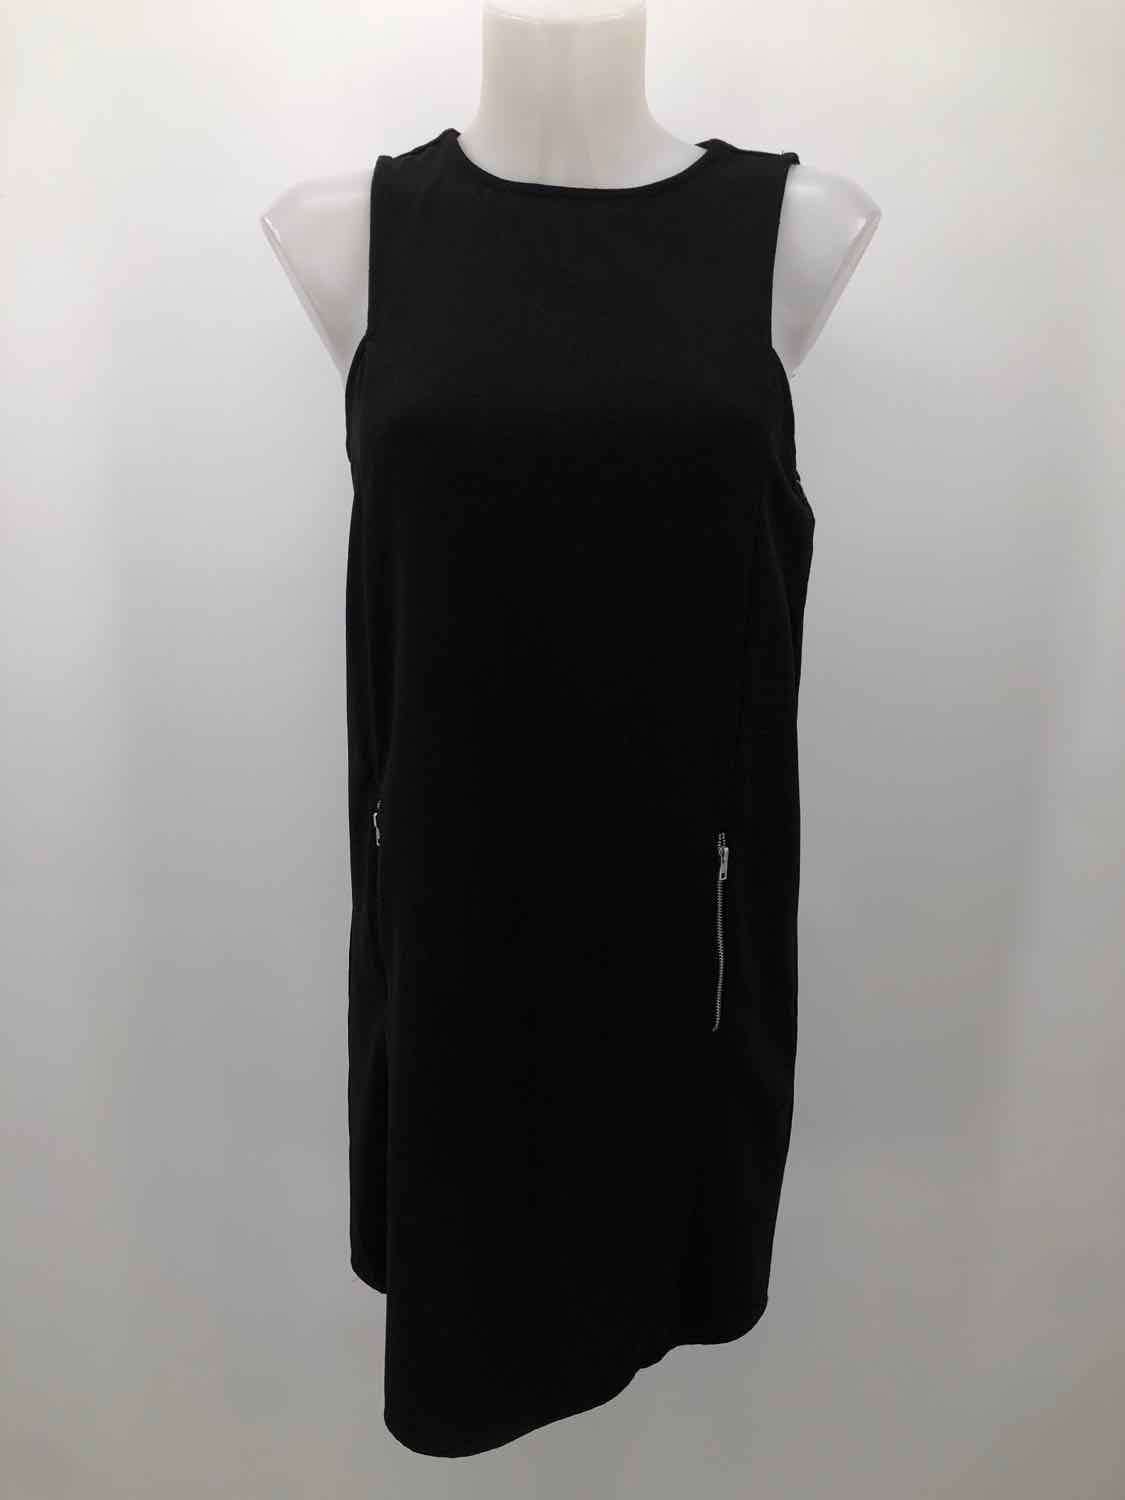 One Clothing Black Size Medium Knee Length Sleeveless Dress